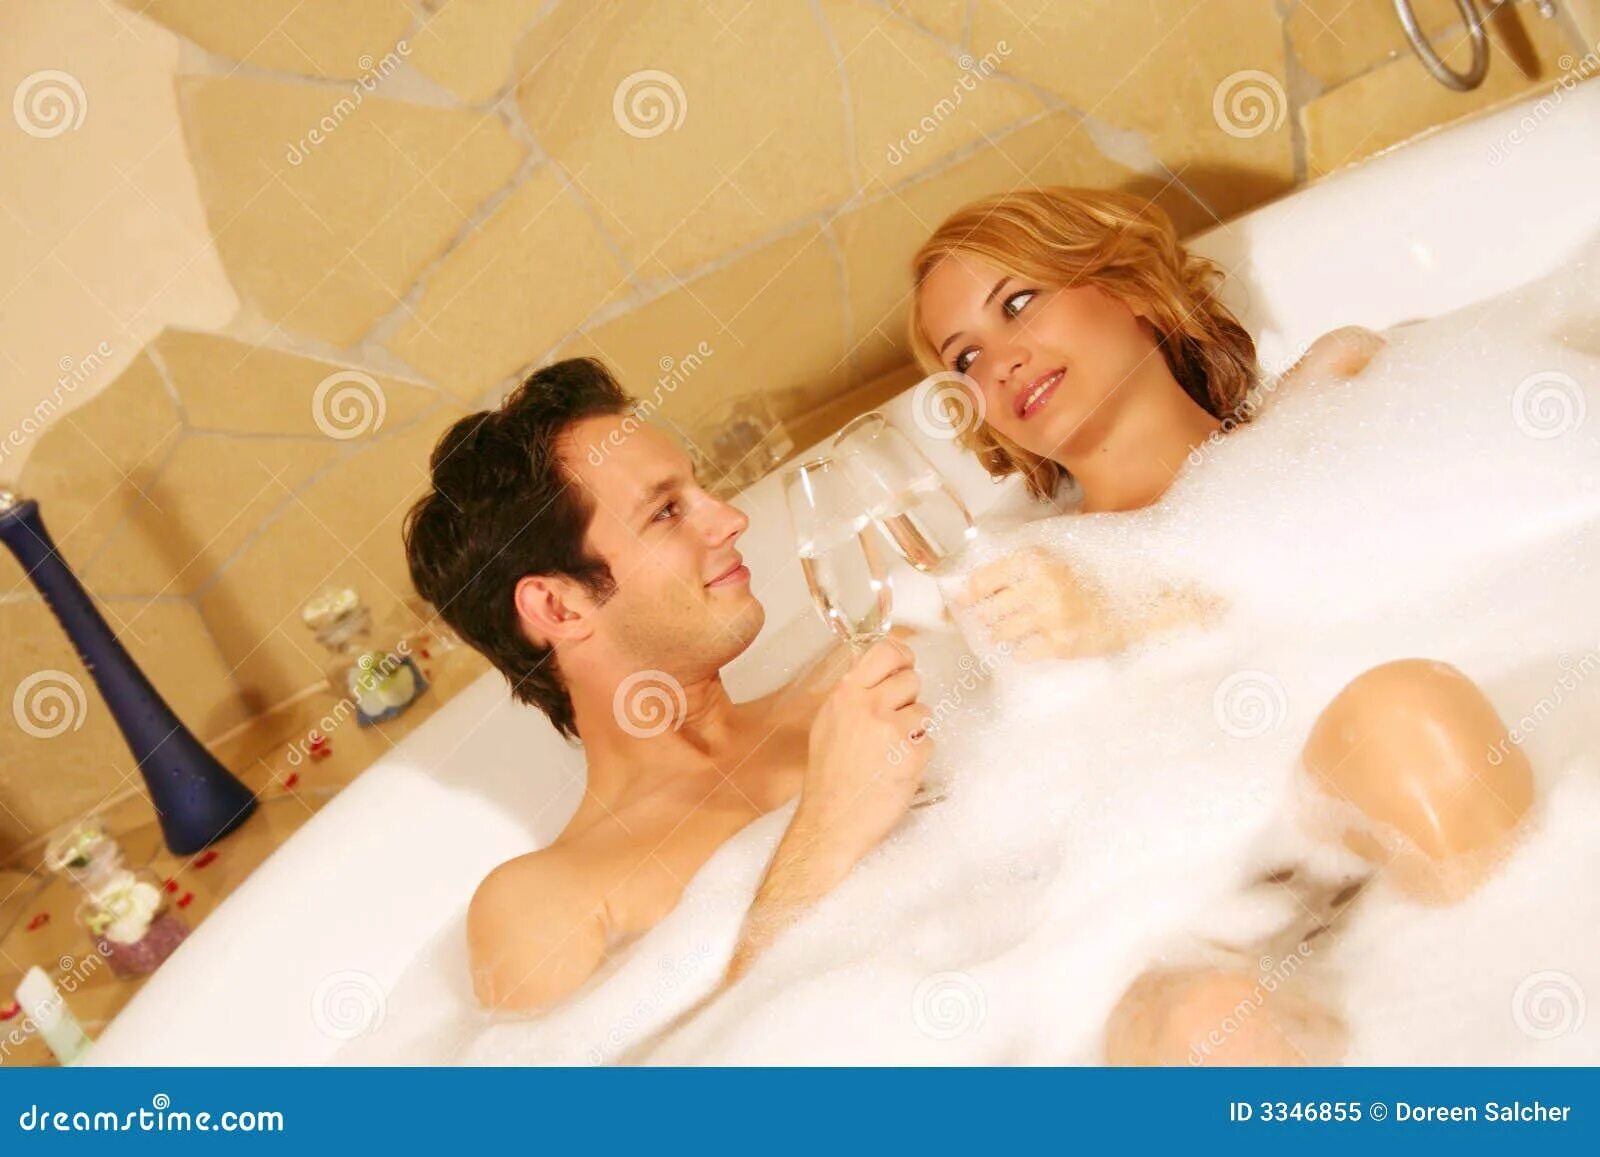 Семейные пары в ванной. Подростковая пара в ванной. Супружеская пара в ванной. Молодая парочка в ванной. Жена с другом в ванной